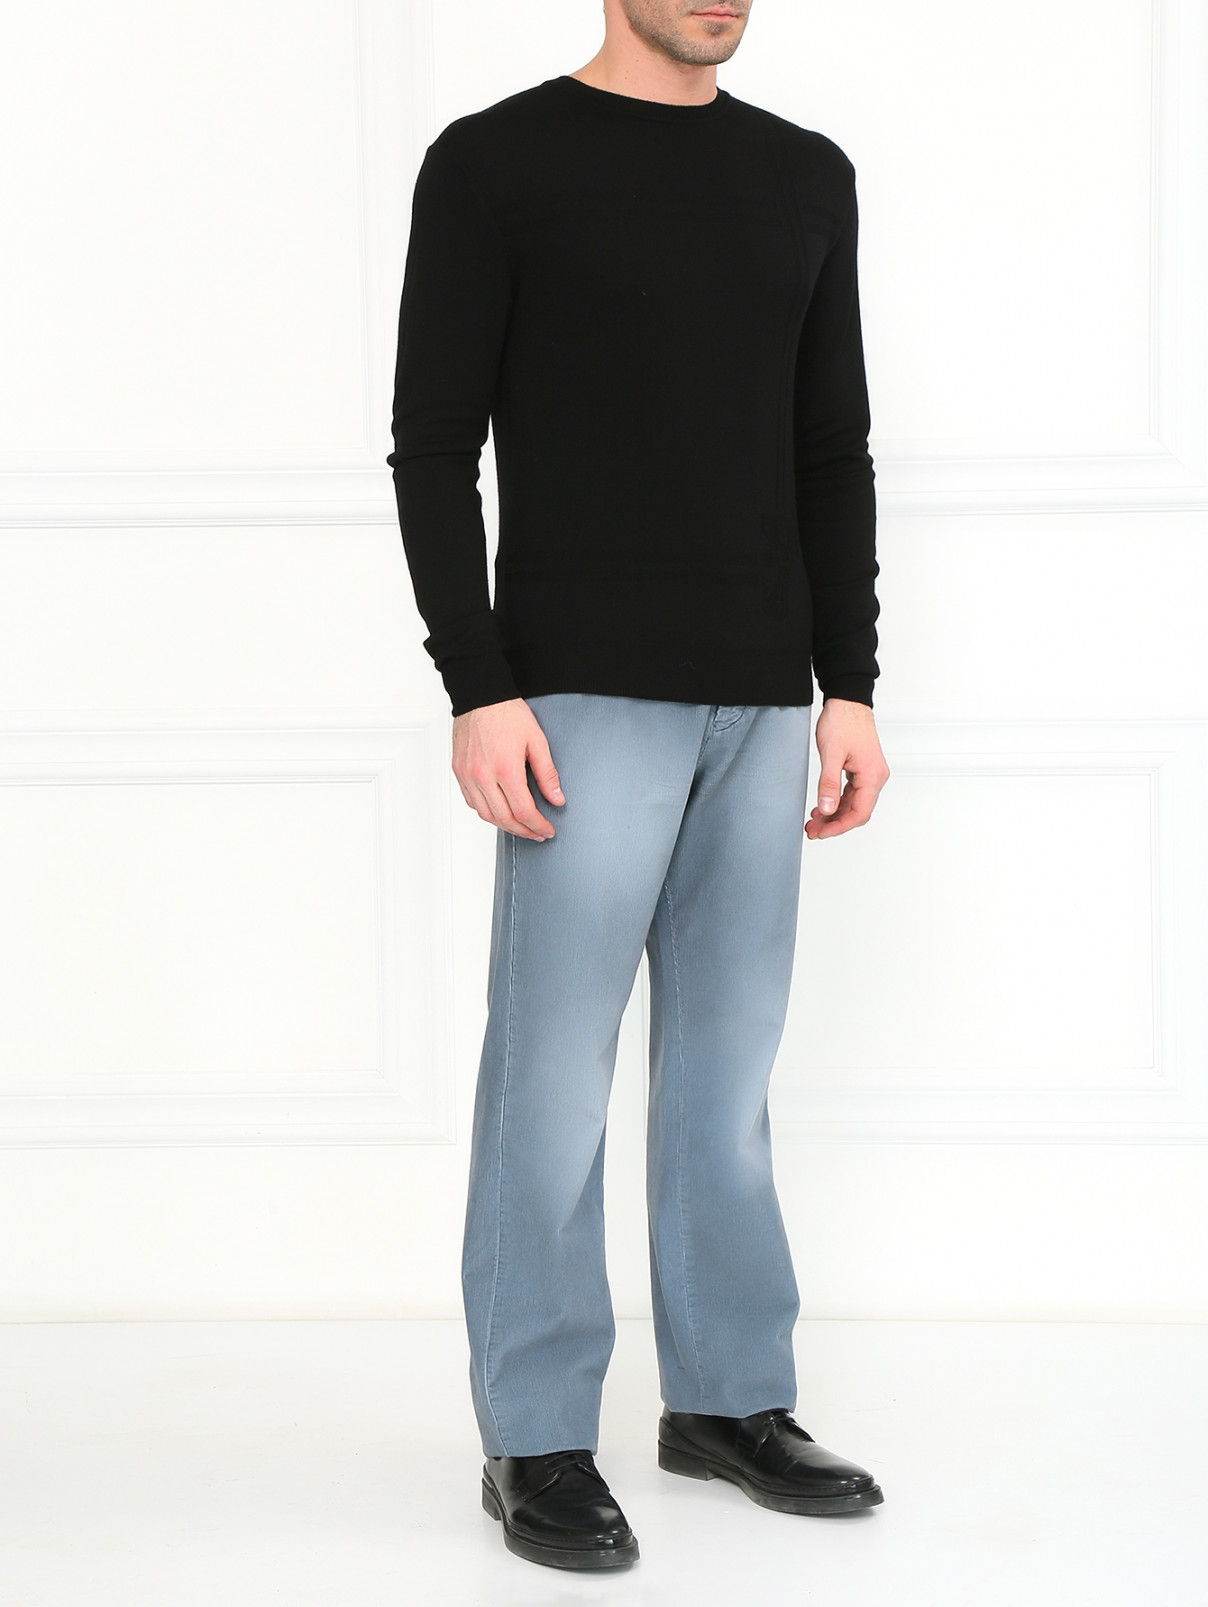 Прямые брюки из хлопка Iceberg  –  Модель Общий вид  – Цвет:  Серый